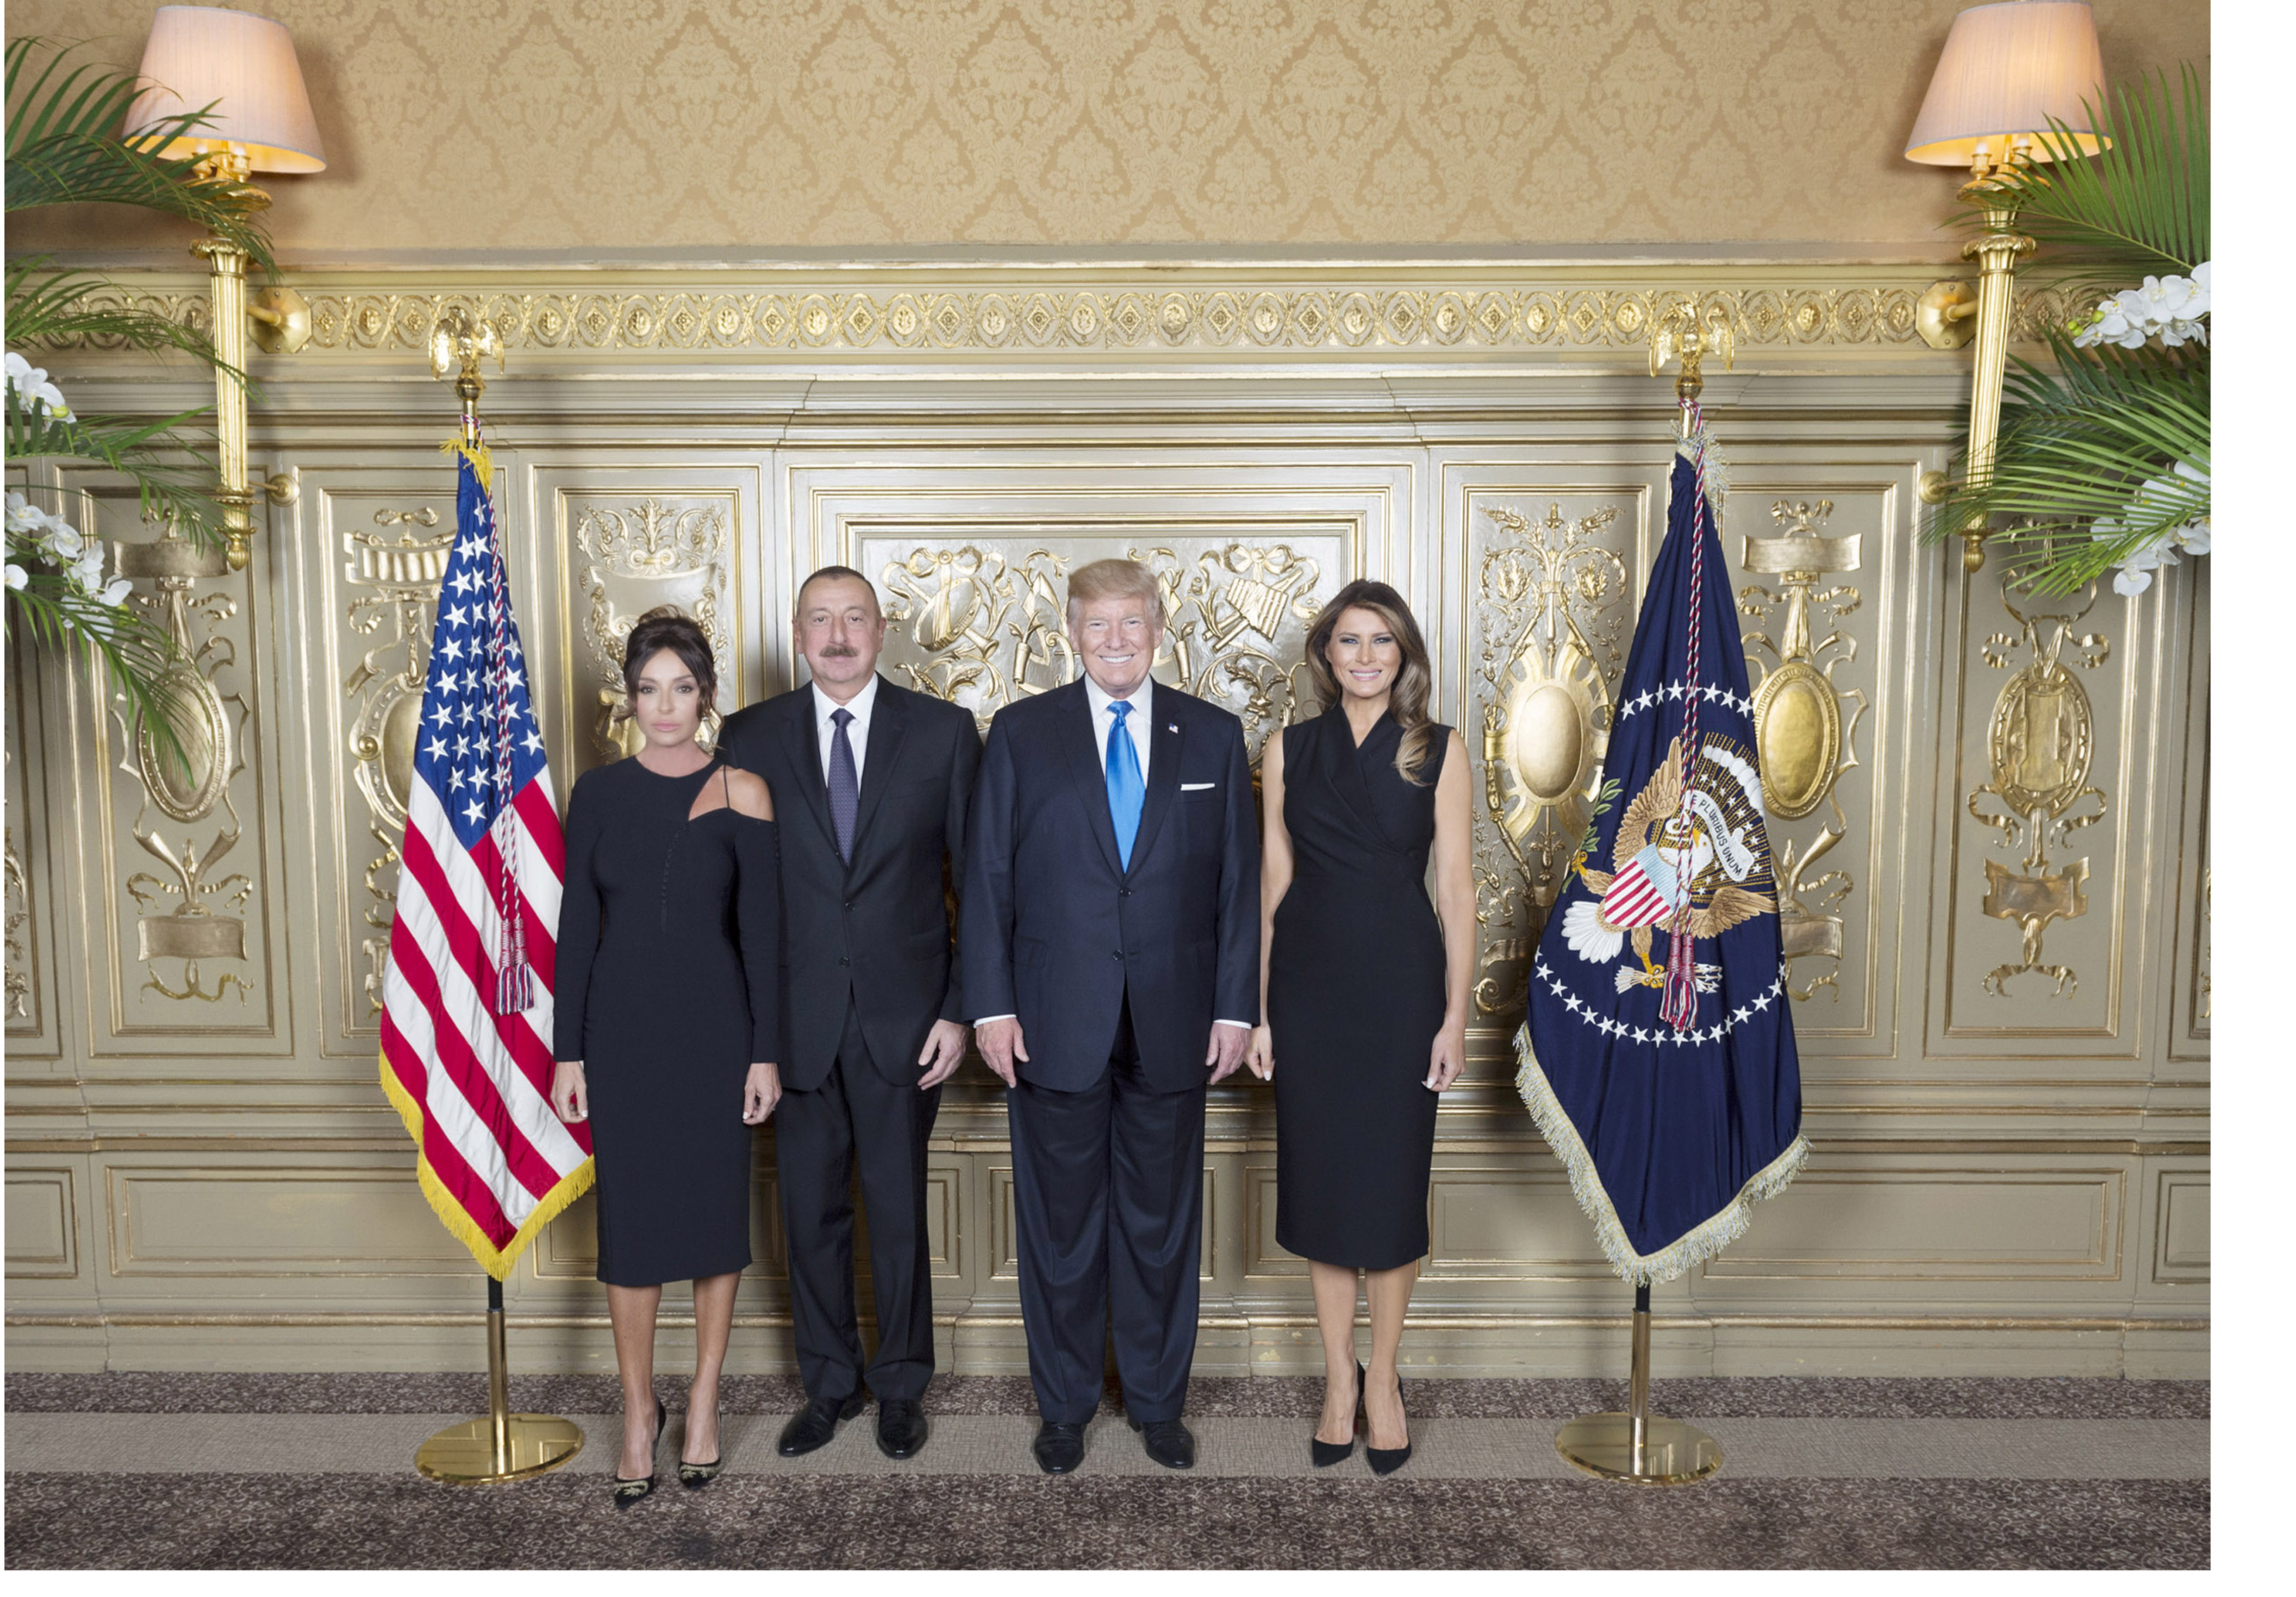 ПрезидентАзербайджанаИльхамАлиев принял участие вприеме, устроенном от имени Президента СШАДональда Трампа и его супруги